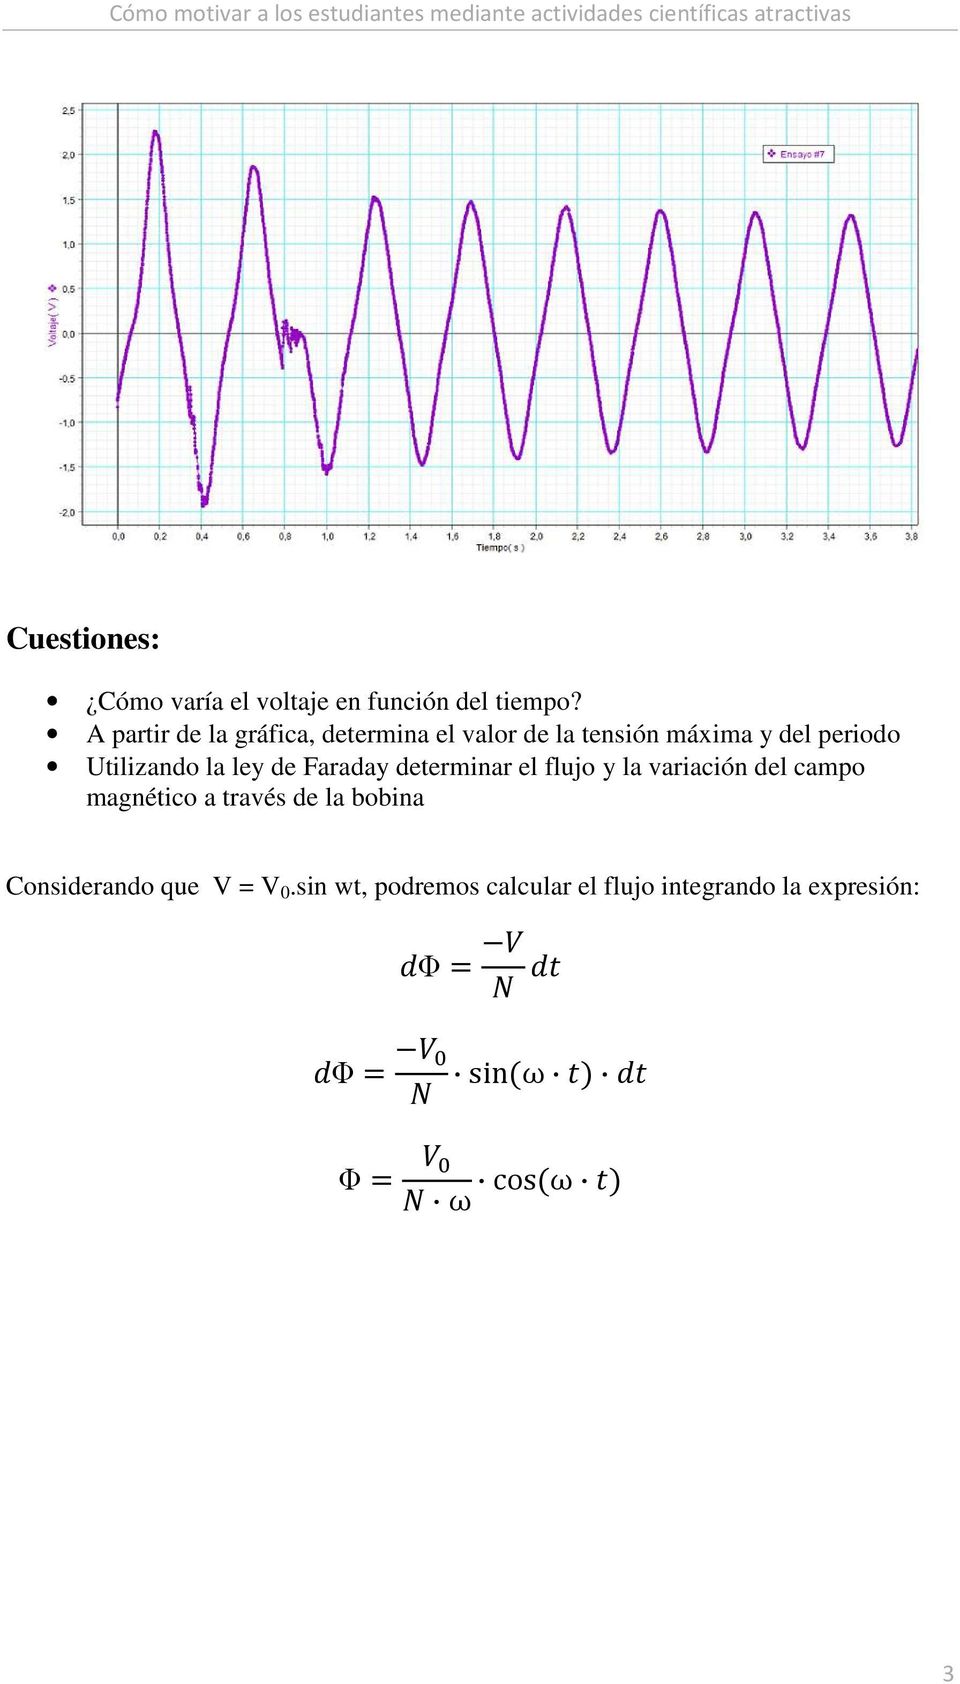 Utilizando la ley de Faraday determinar el flujo y la variación del campo magnético a